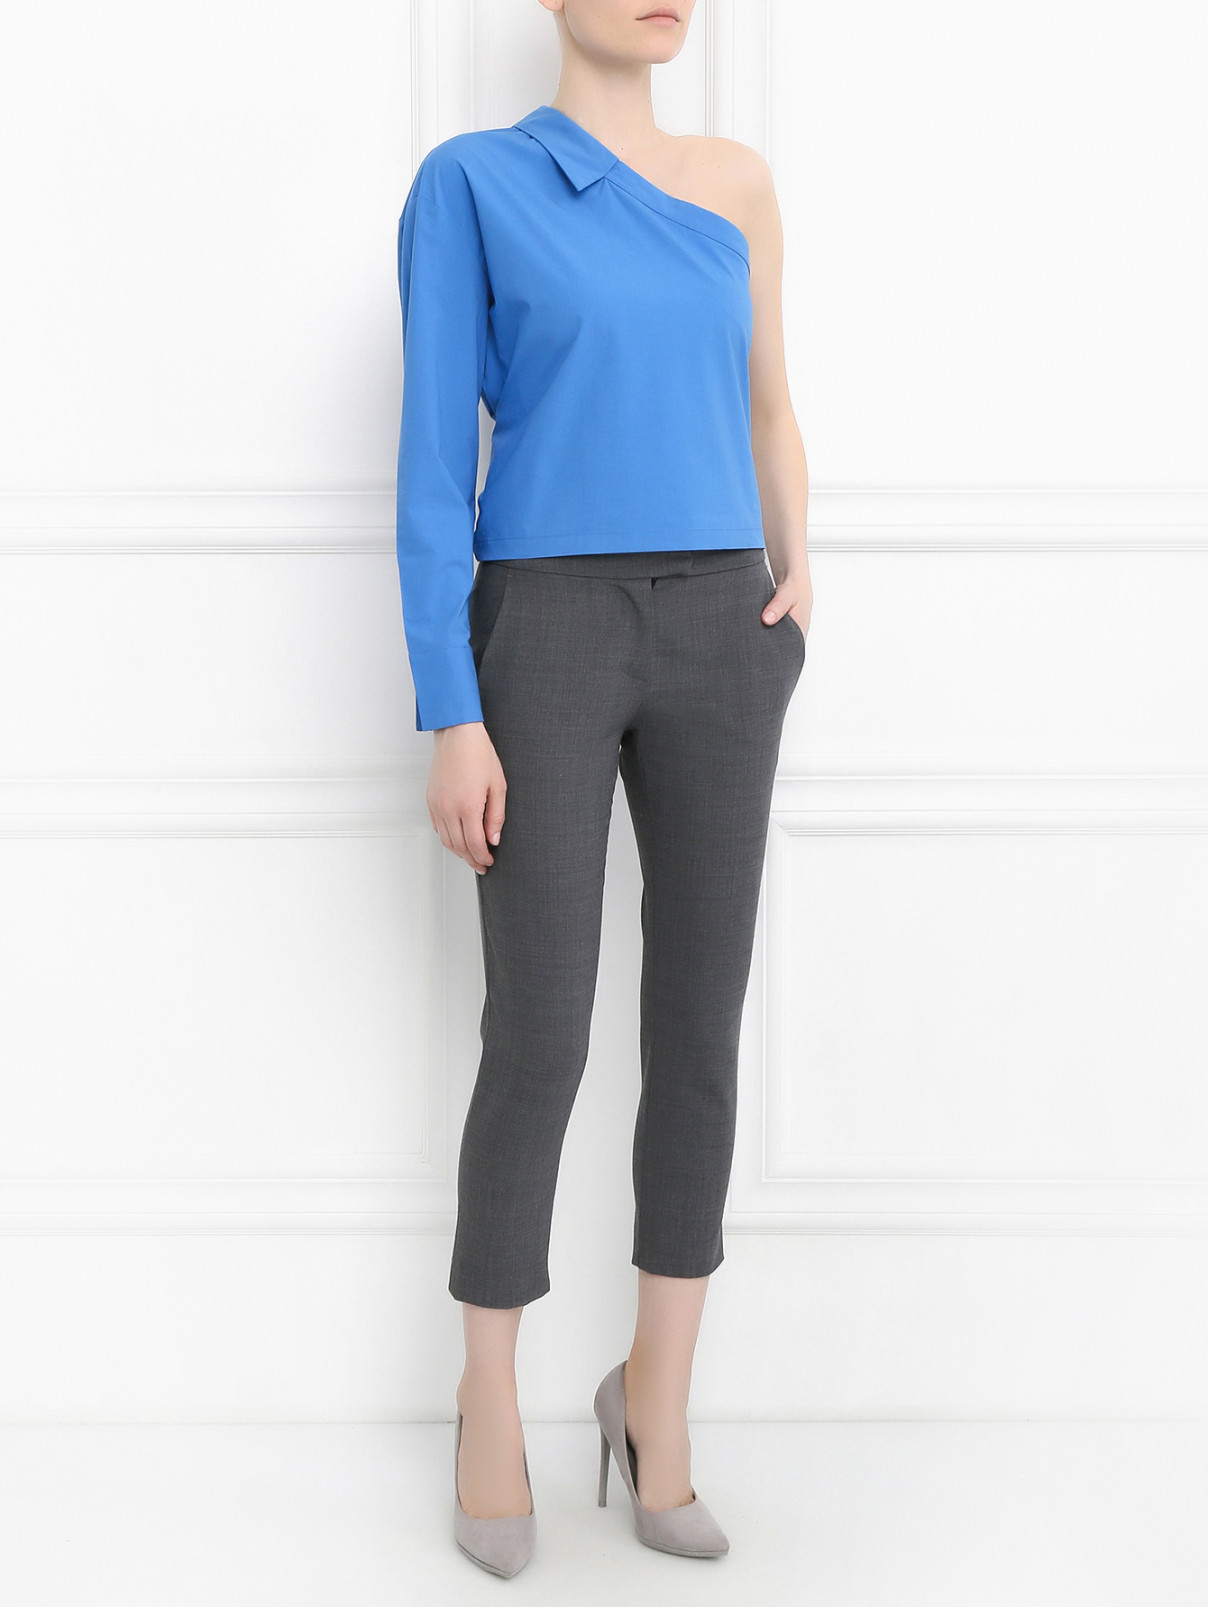 Рубашка из хлопка Erika Cavallini  –  Модель Общий вид  – Цвет:  Синий